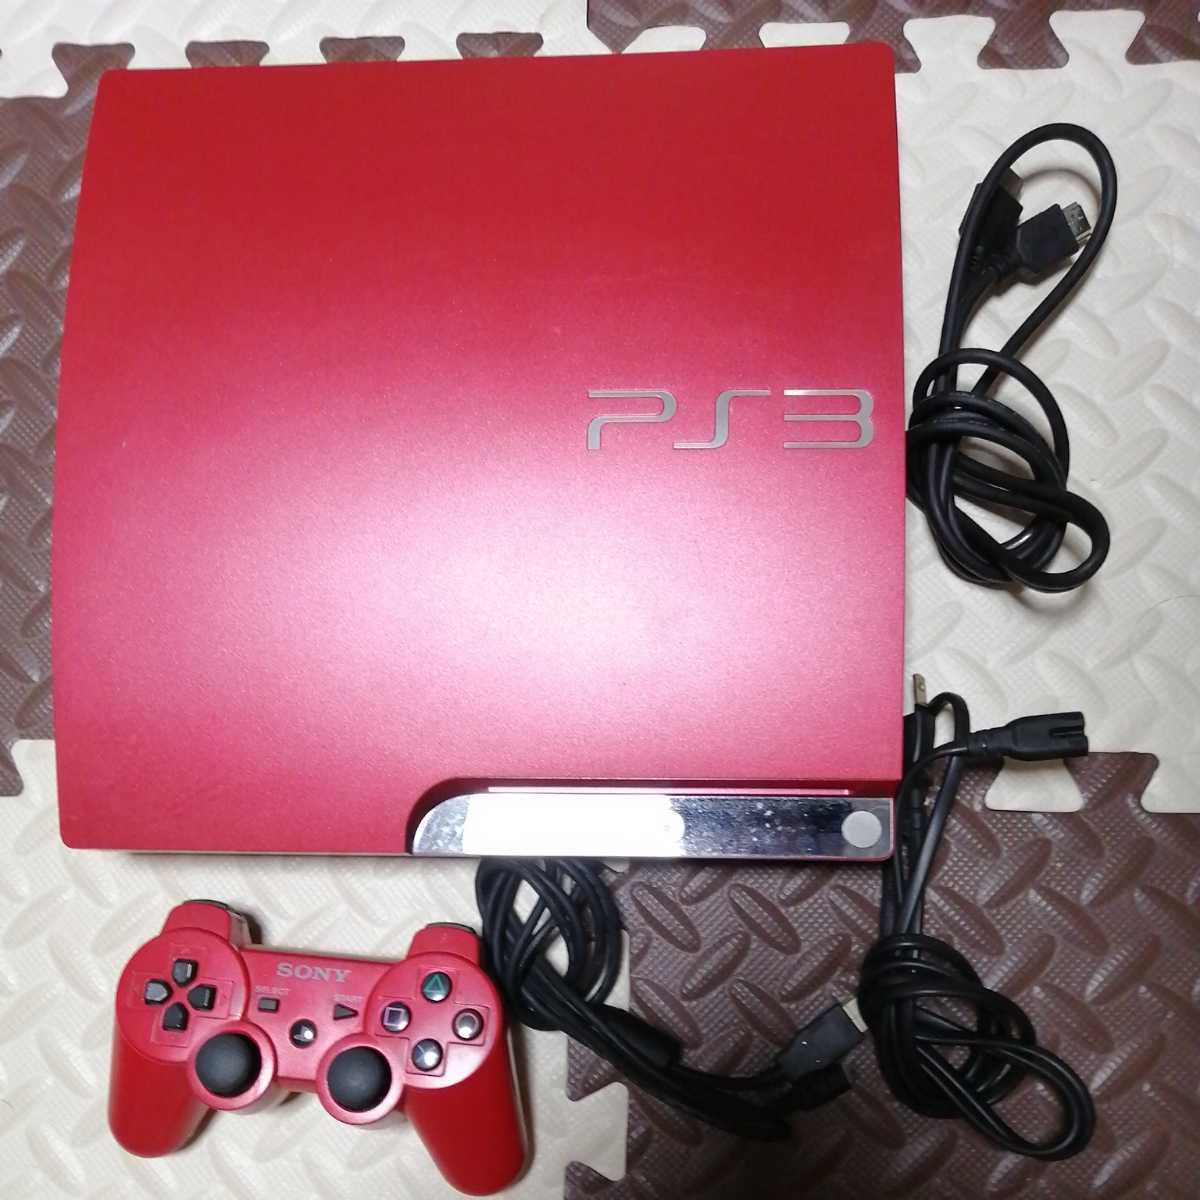 全ての スカーレット 本体 PS3 動作良好 美品 レッド320GB★cech3000b★赤 HDMI付 プレイステーション3 PlayStation3 プレステ3 red scarlet アカ PS3本体